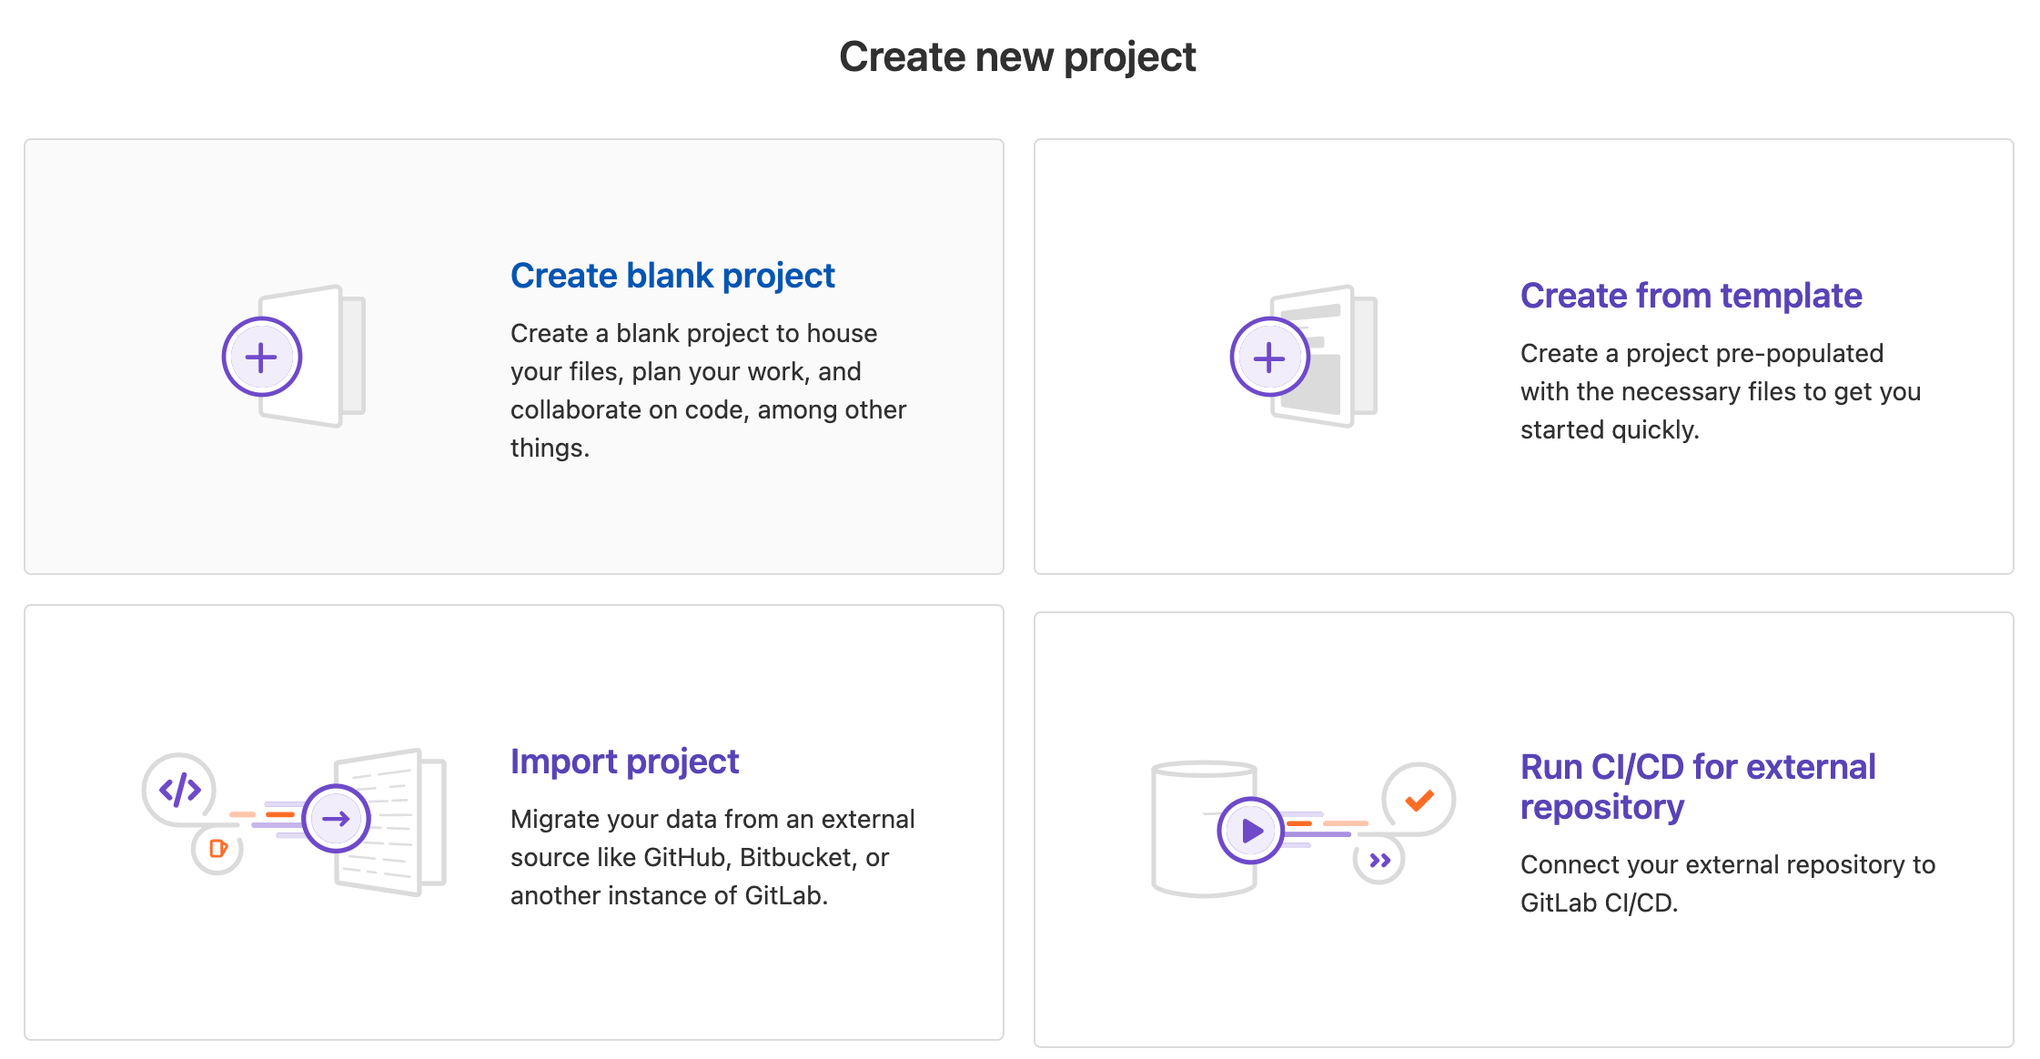 Erstellen eines neuen Projekts in GitLab